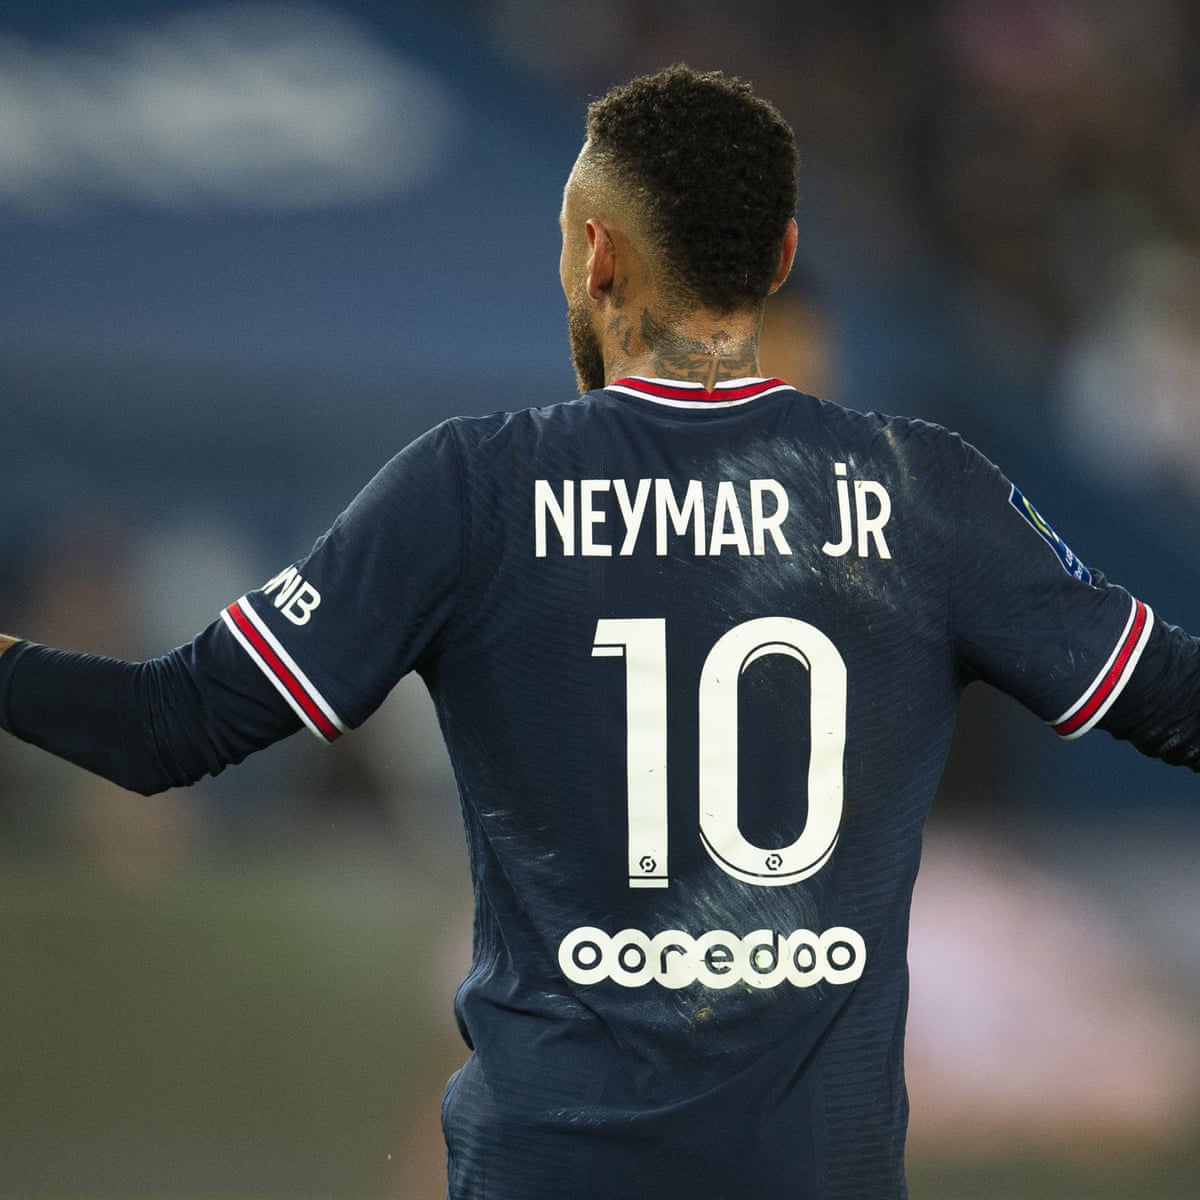 Neymar gabung dengan Al Hilal dengan permintaan gila gilaan